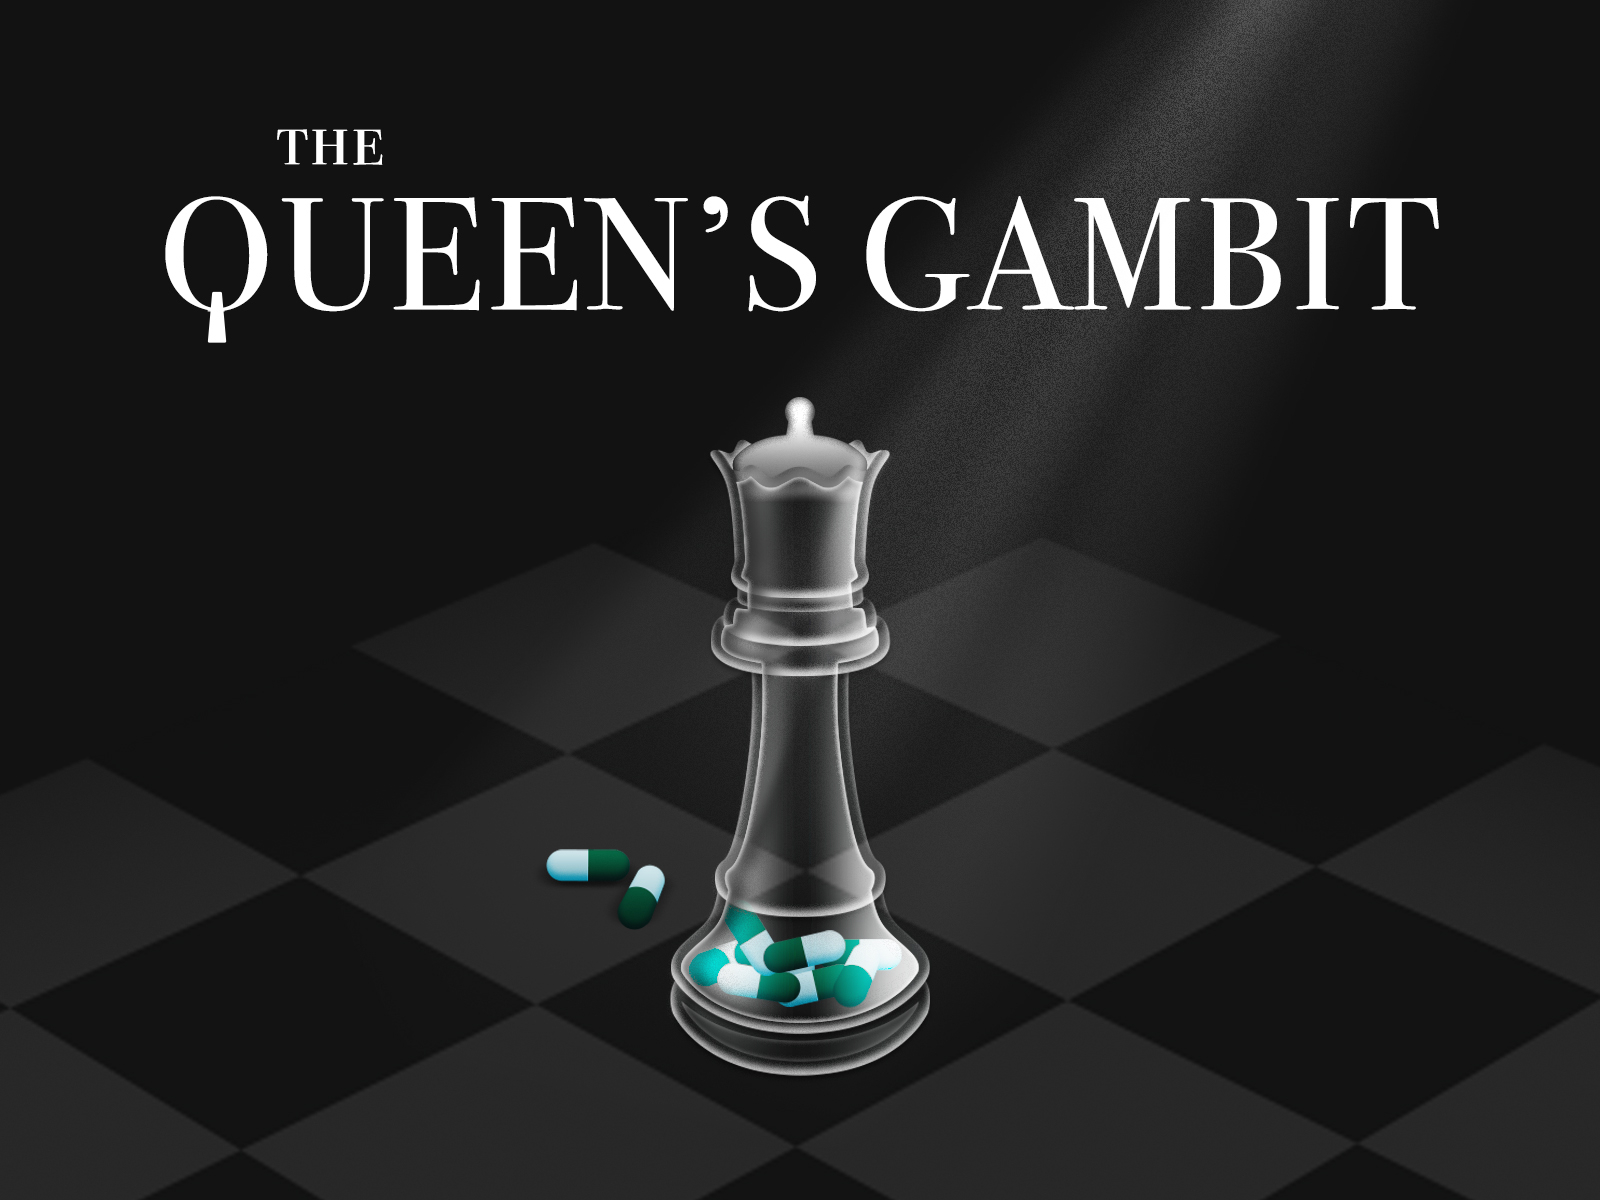 The Queen's gambit wallpaper  Queen's gambit wallpaper, The queen's gambit  wallpaper, Queen's gambit